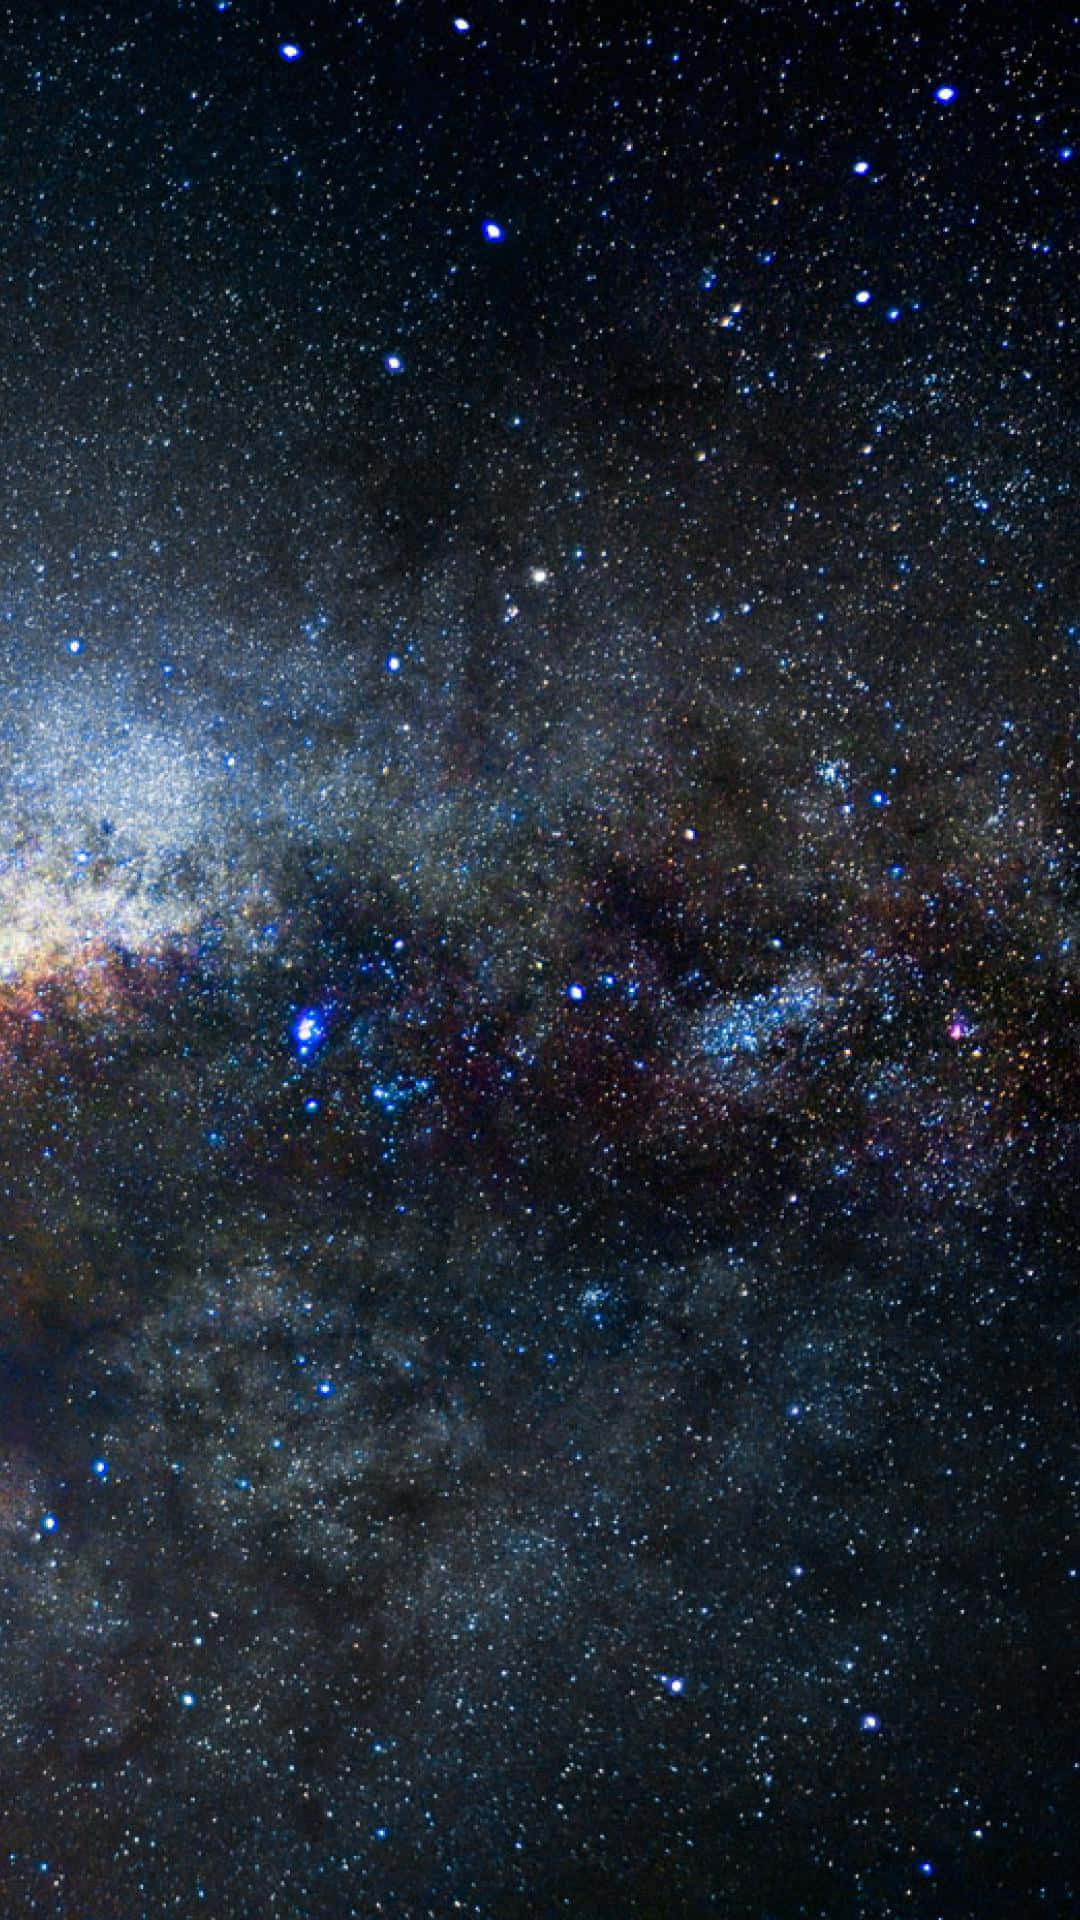 Estrelasazuis Cintilantes Em Uma Noite Escura Papel de Parede